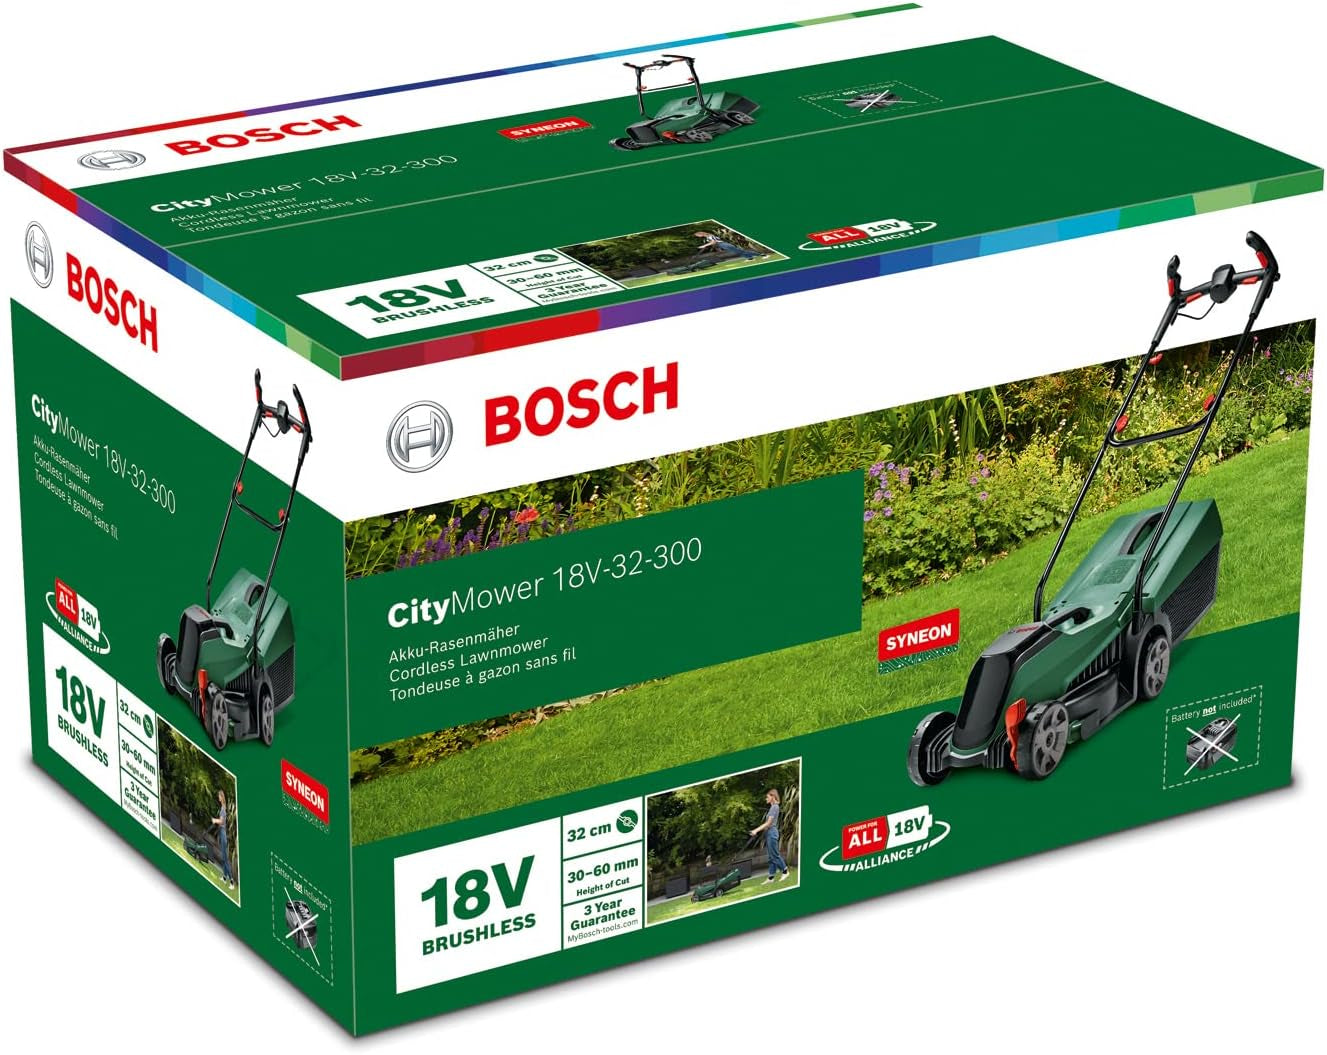 Bosch Home and Garden Bosch Akku-Rasenmäher Citymower 18V-32-300 (18 Volt System, P4A System, 1X Akku 4,0 Ah, Bürstenloser Motor, Schnittbreite: 32 Cm, Rasenflächen Bis 300 M², Im Karton)